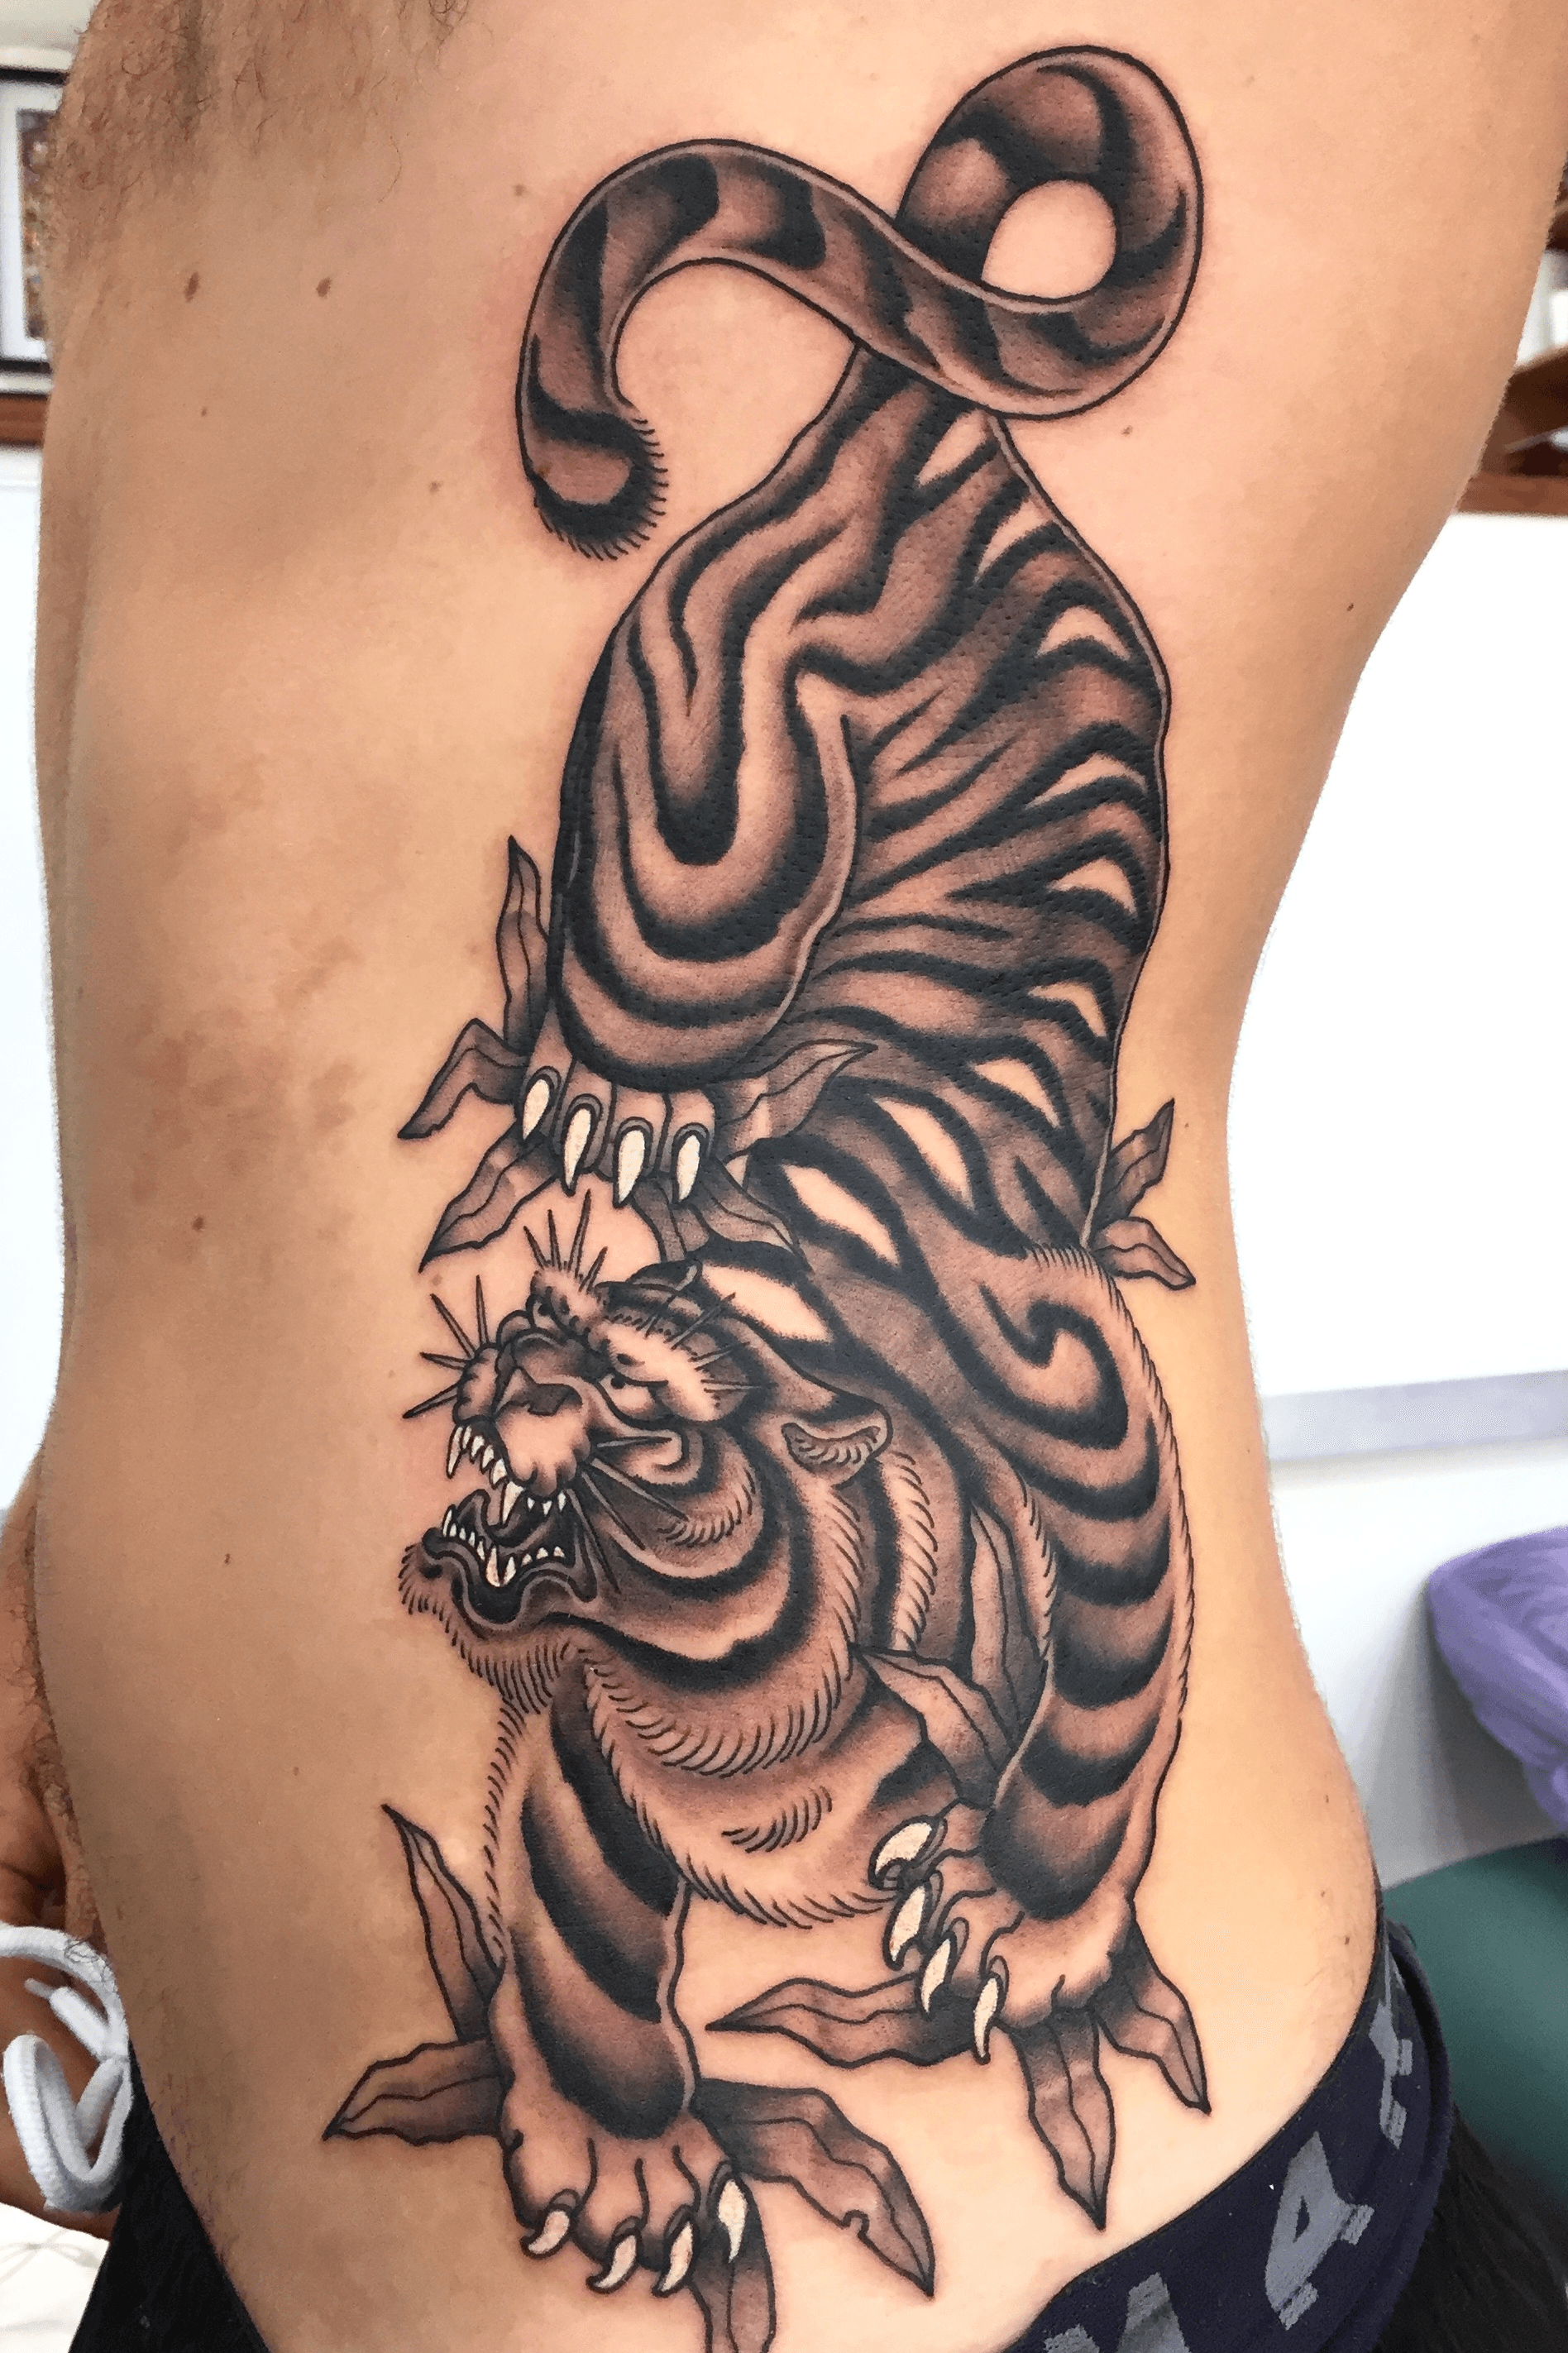 Tiger tattoo on the rib healed